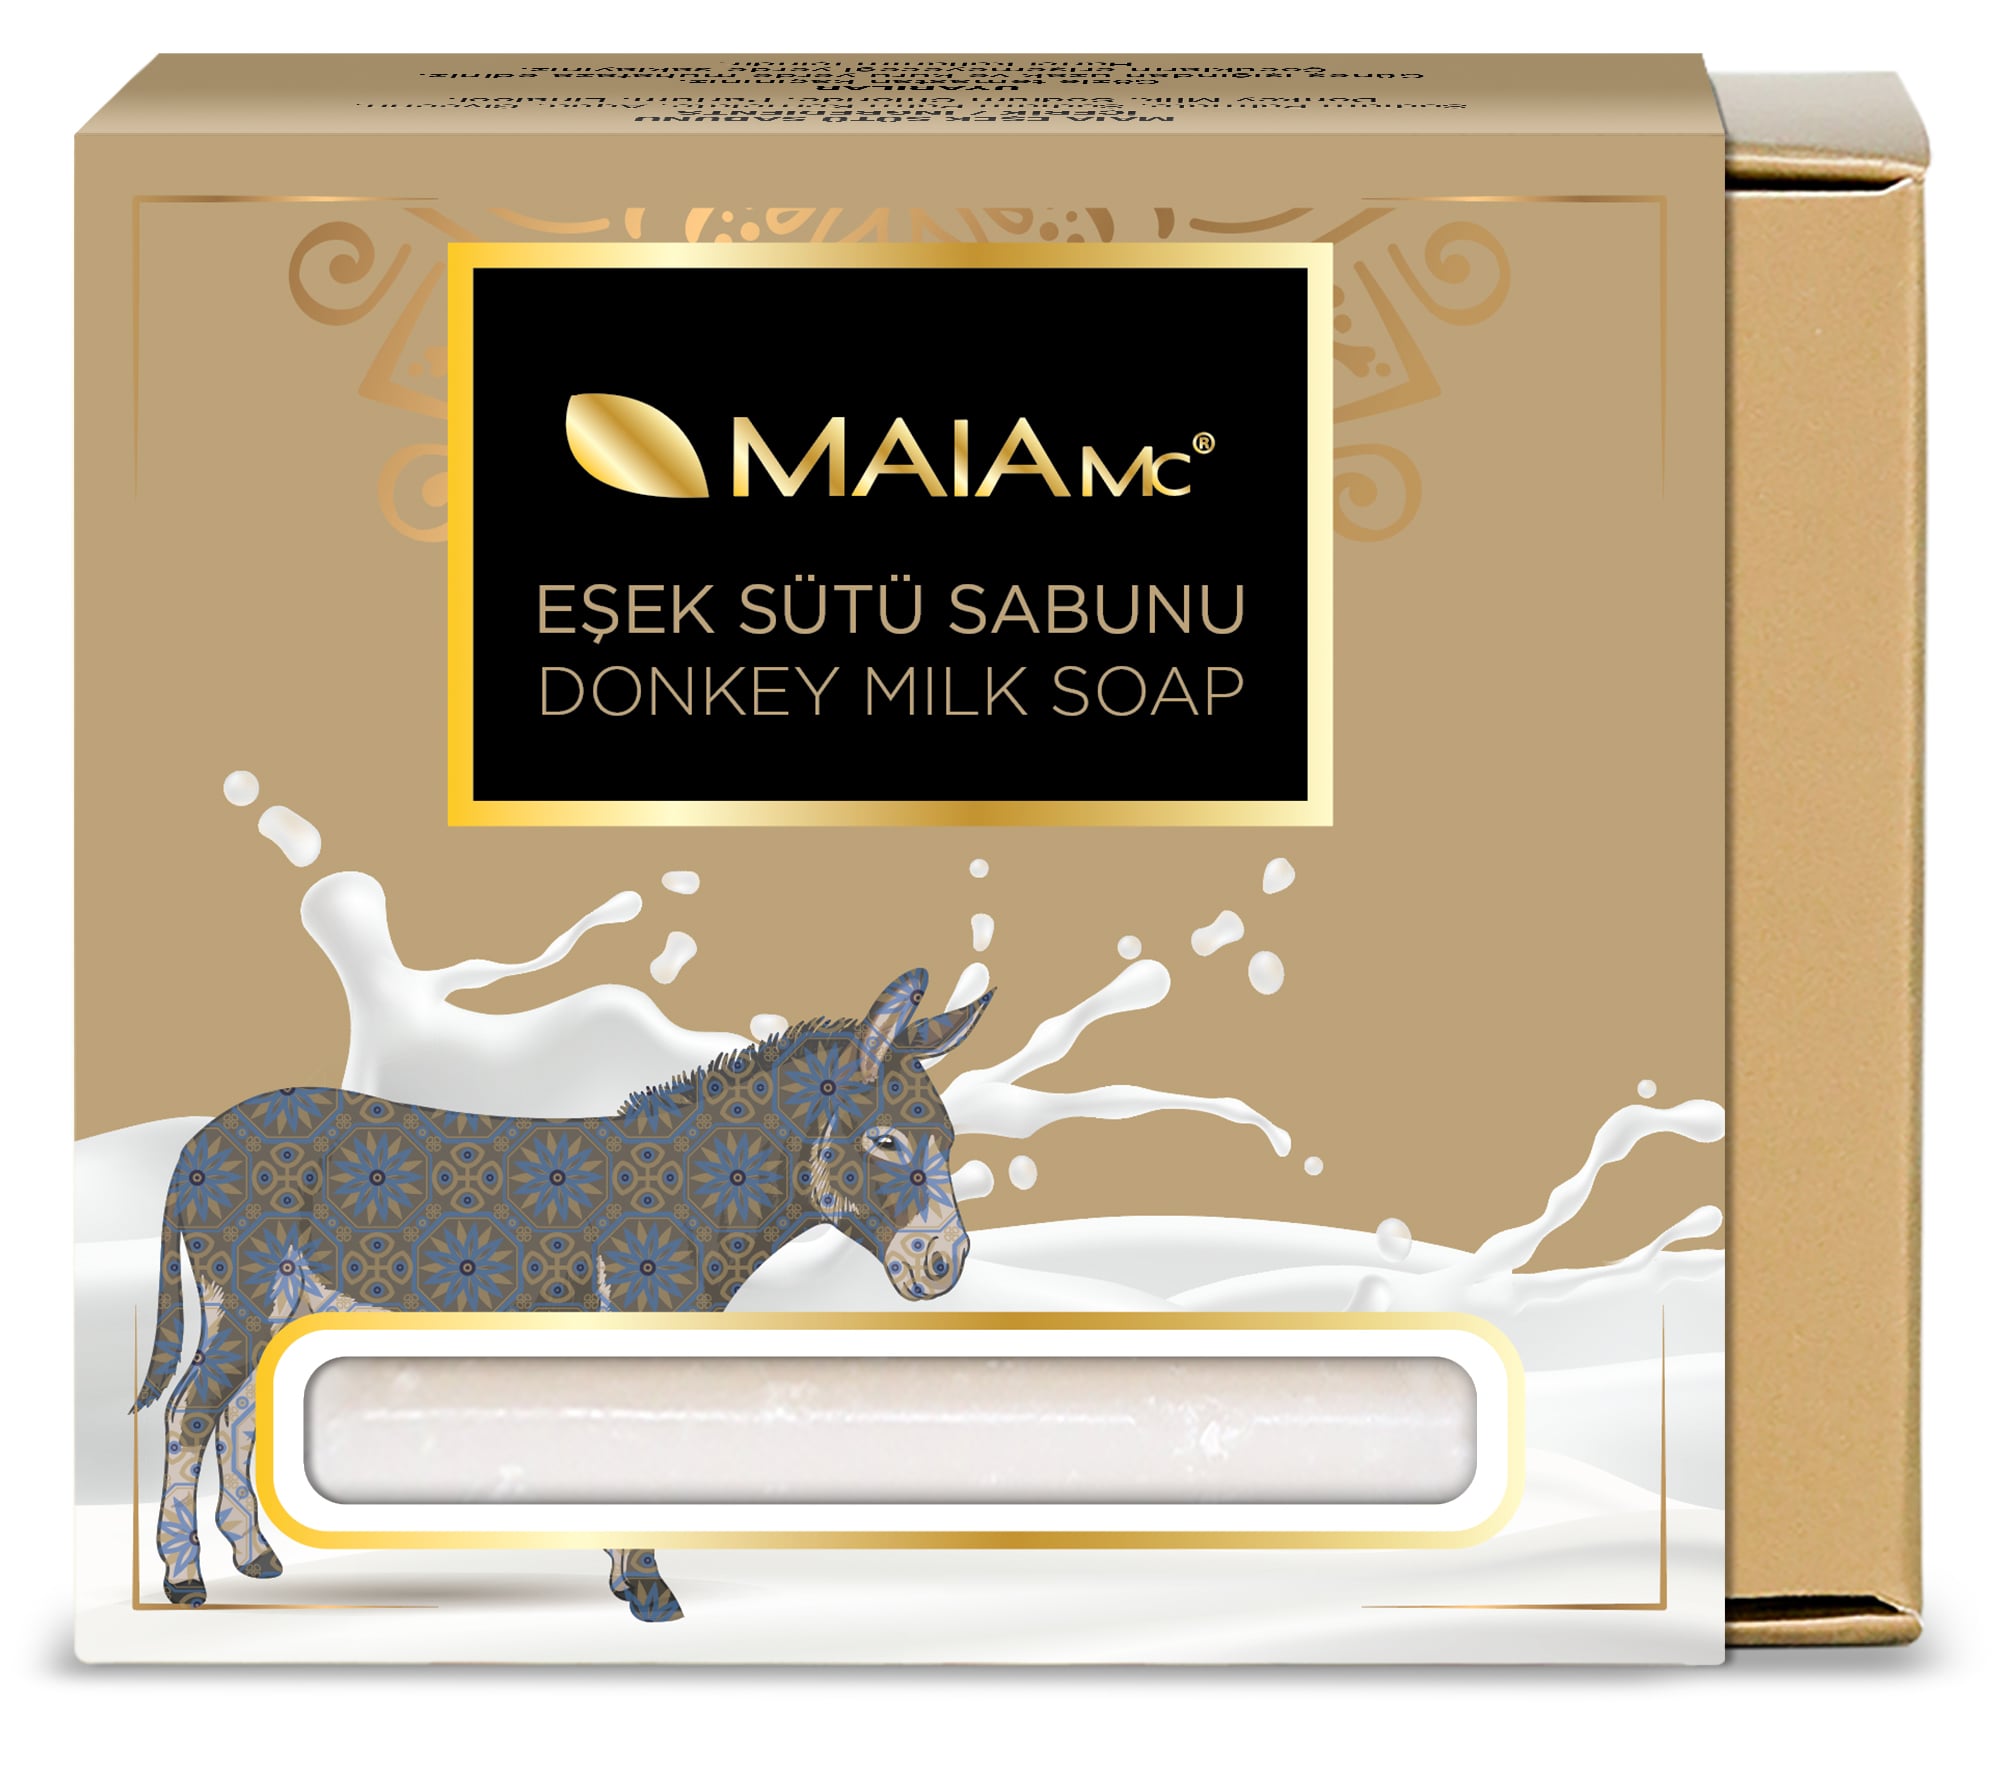 Турецкое натуральное мыло Maia Mc из ослиного молока мыло из 26 минералов